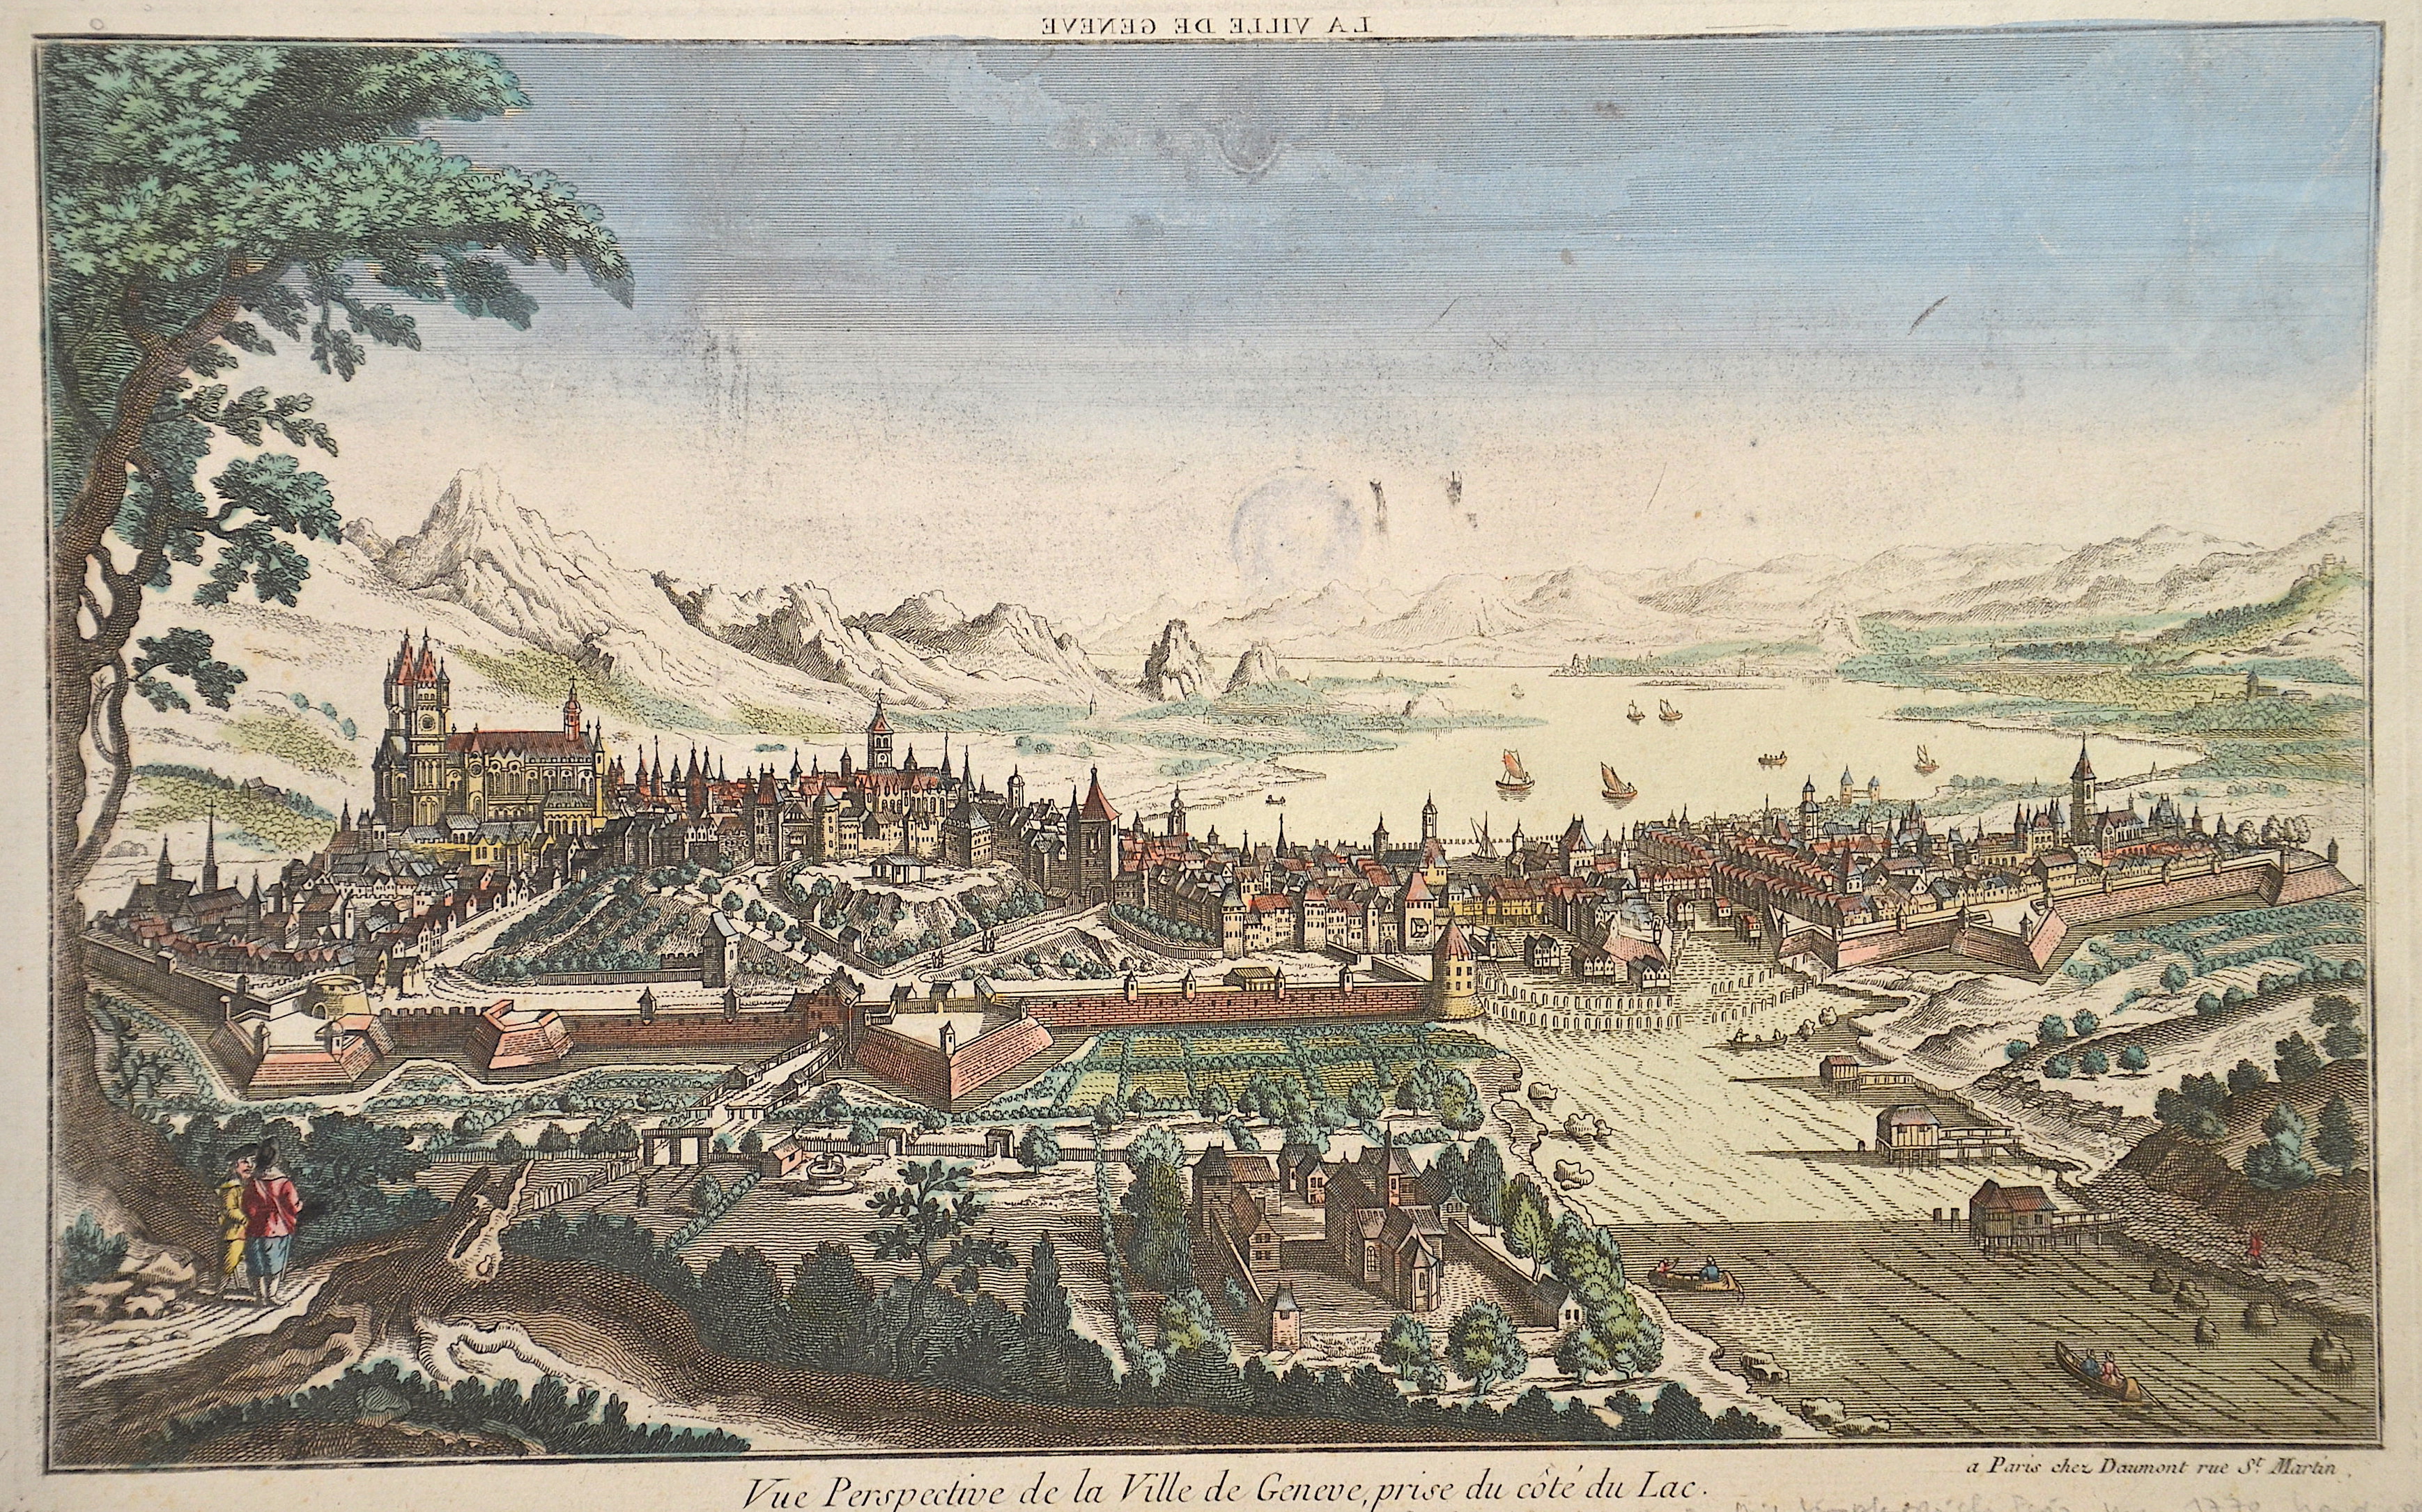 Daumont Jean-Francois Vue Perspective de la Ville de Geneve, prise du cote du Lac.